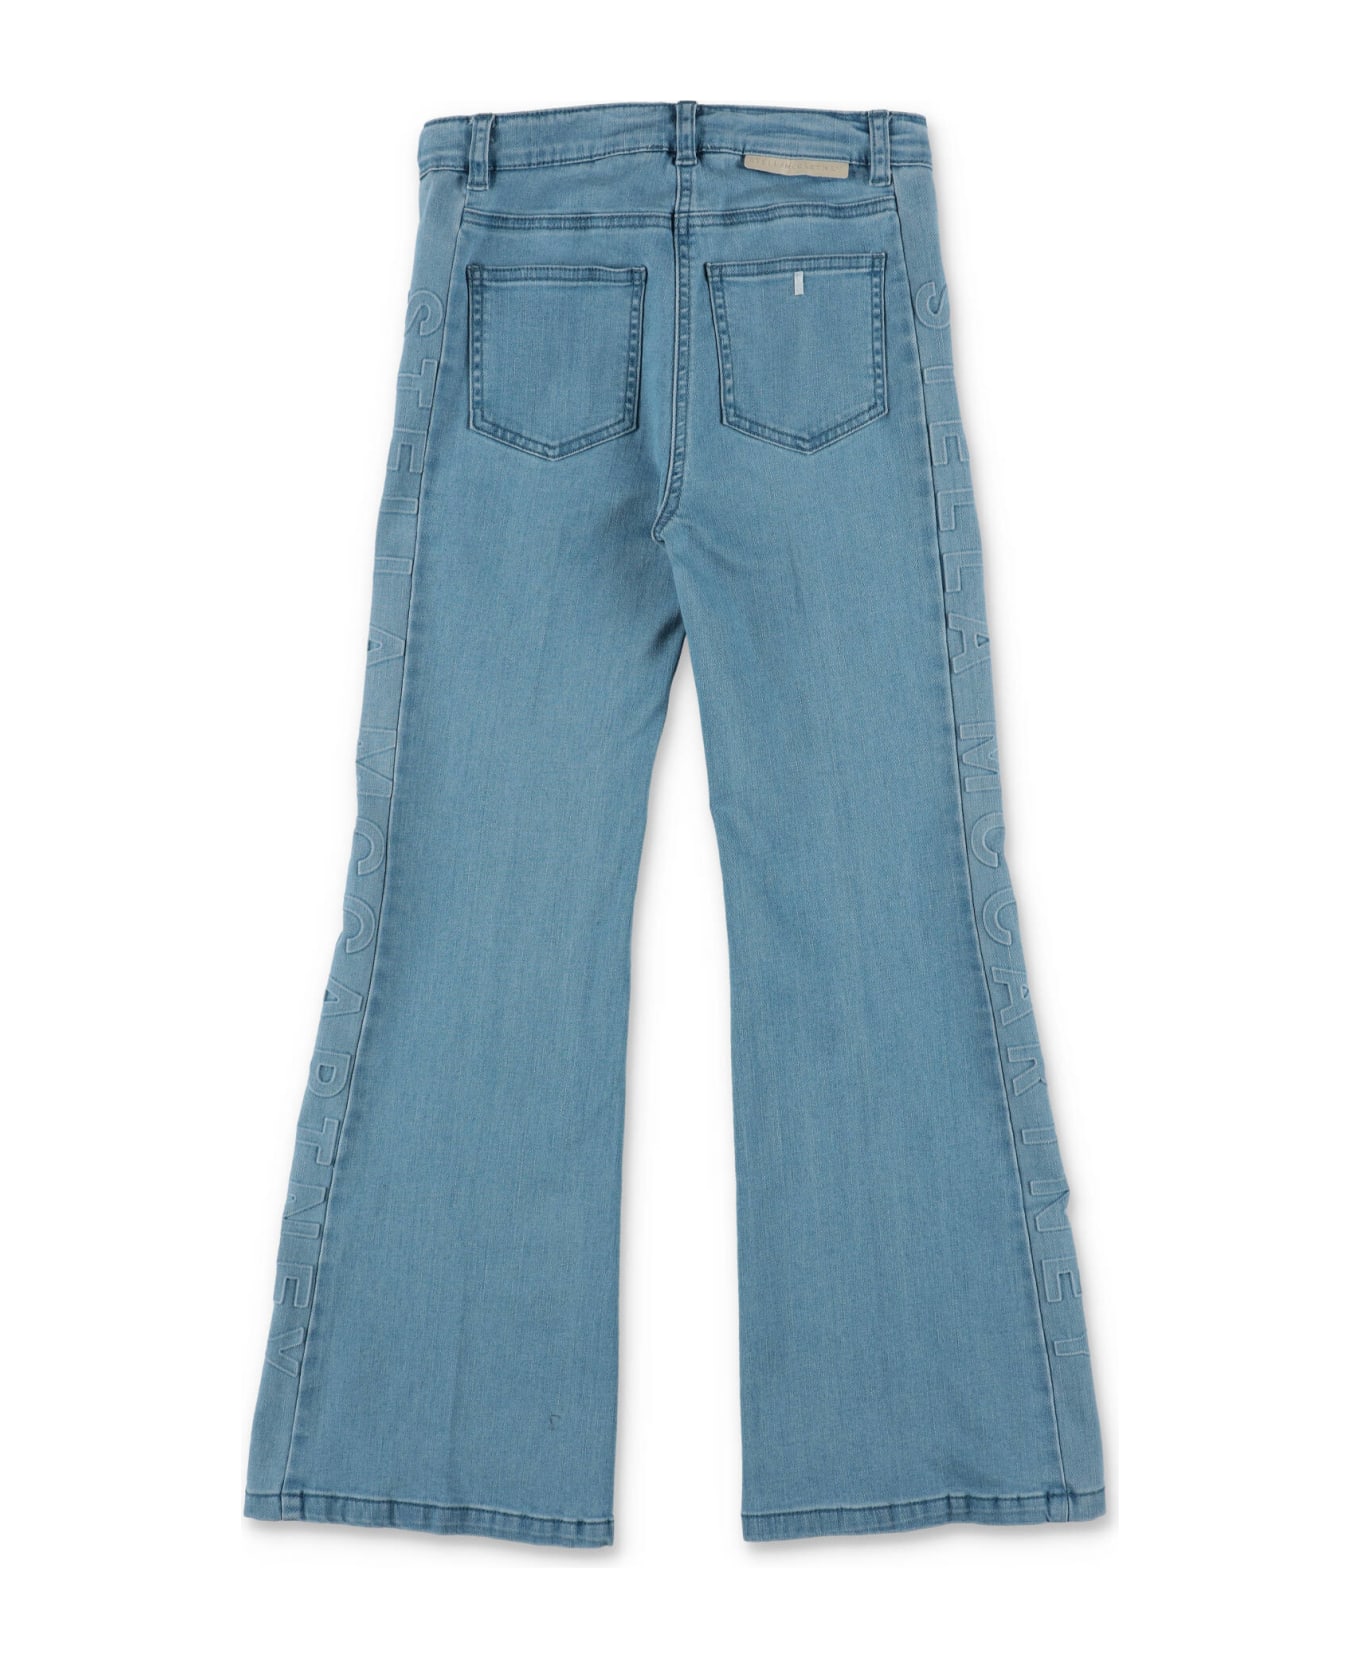 Stella McCartney Kids Stella Mccartney Jeans Blu Chiaro In Denim Di Cotone Stretch Bambina - Blu